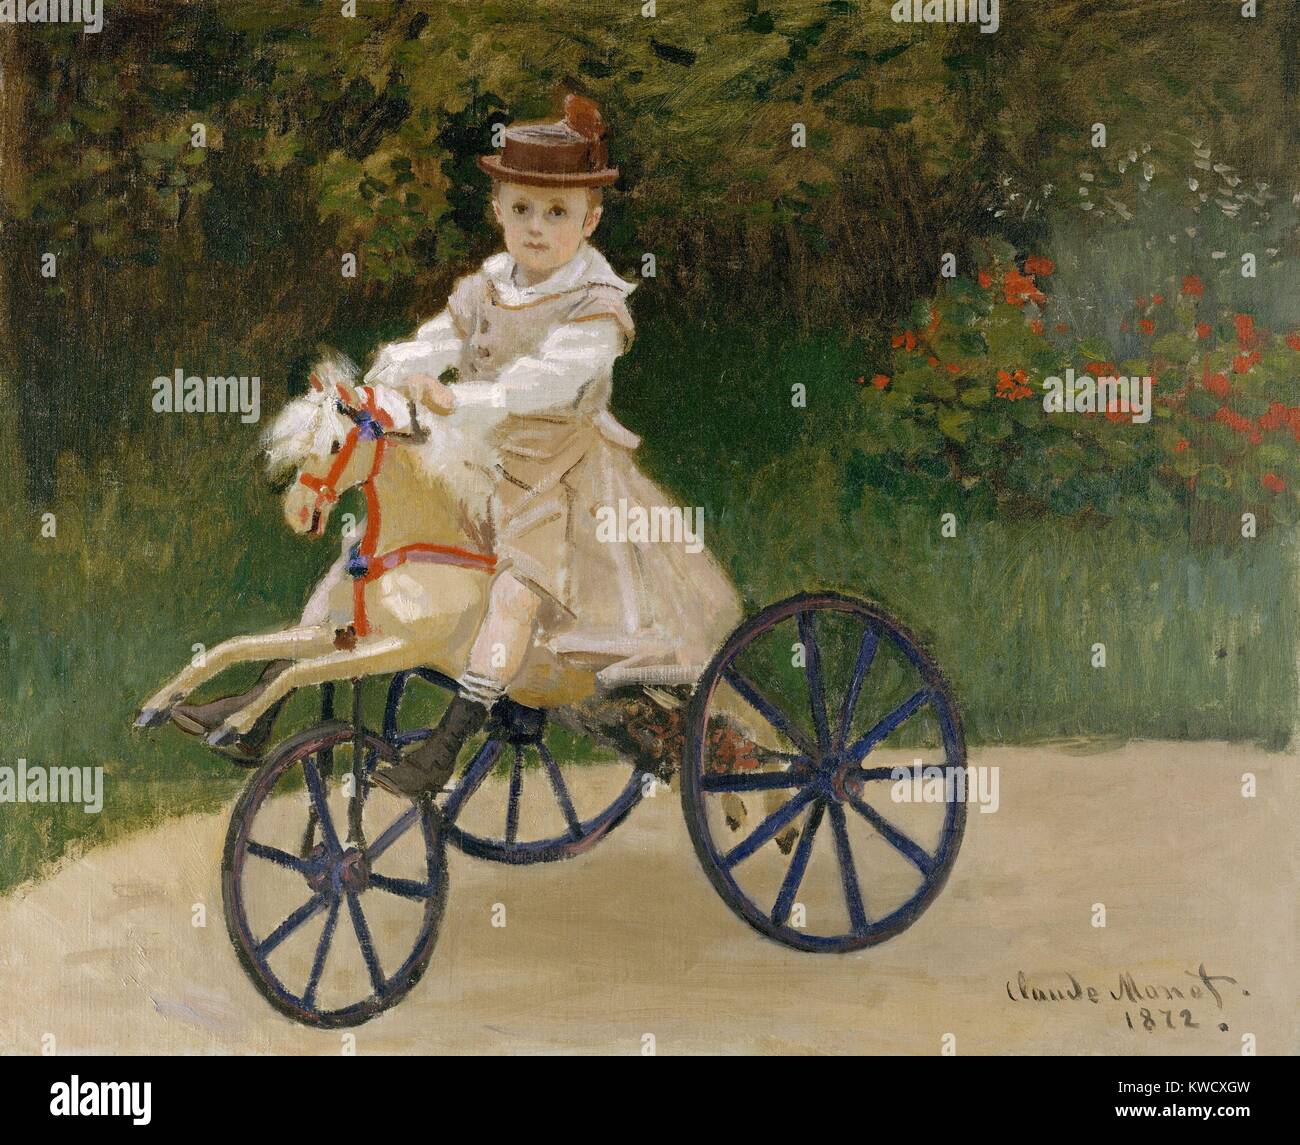 Jean Monet sur son hobby Horse, par Claude Monet, 1872, la peinture impressionniste français, huile sur toile. Monet a mis le portrait de son fils de 5 ans l'ensemble de sa vie (BSLOC 2017 3 22) Banque D'Images